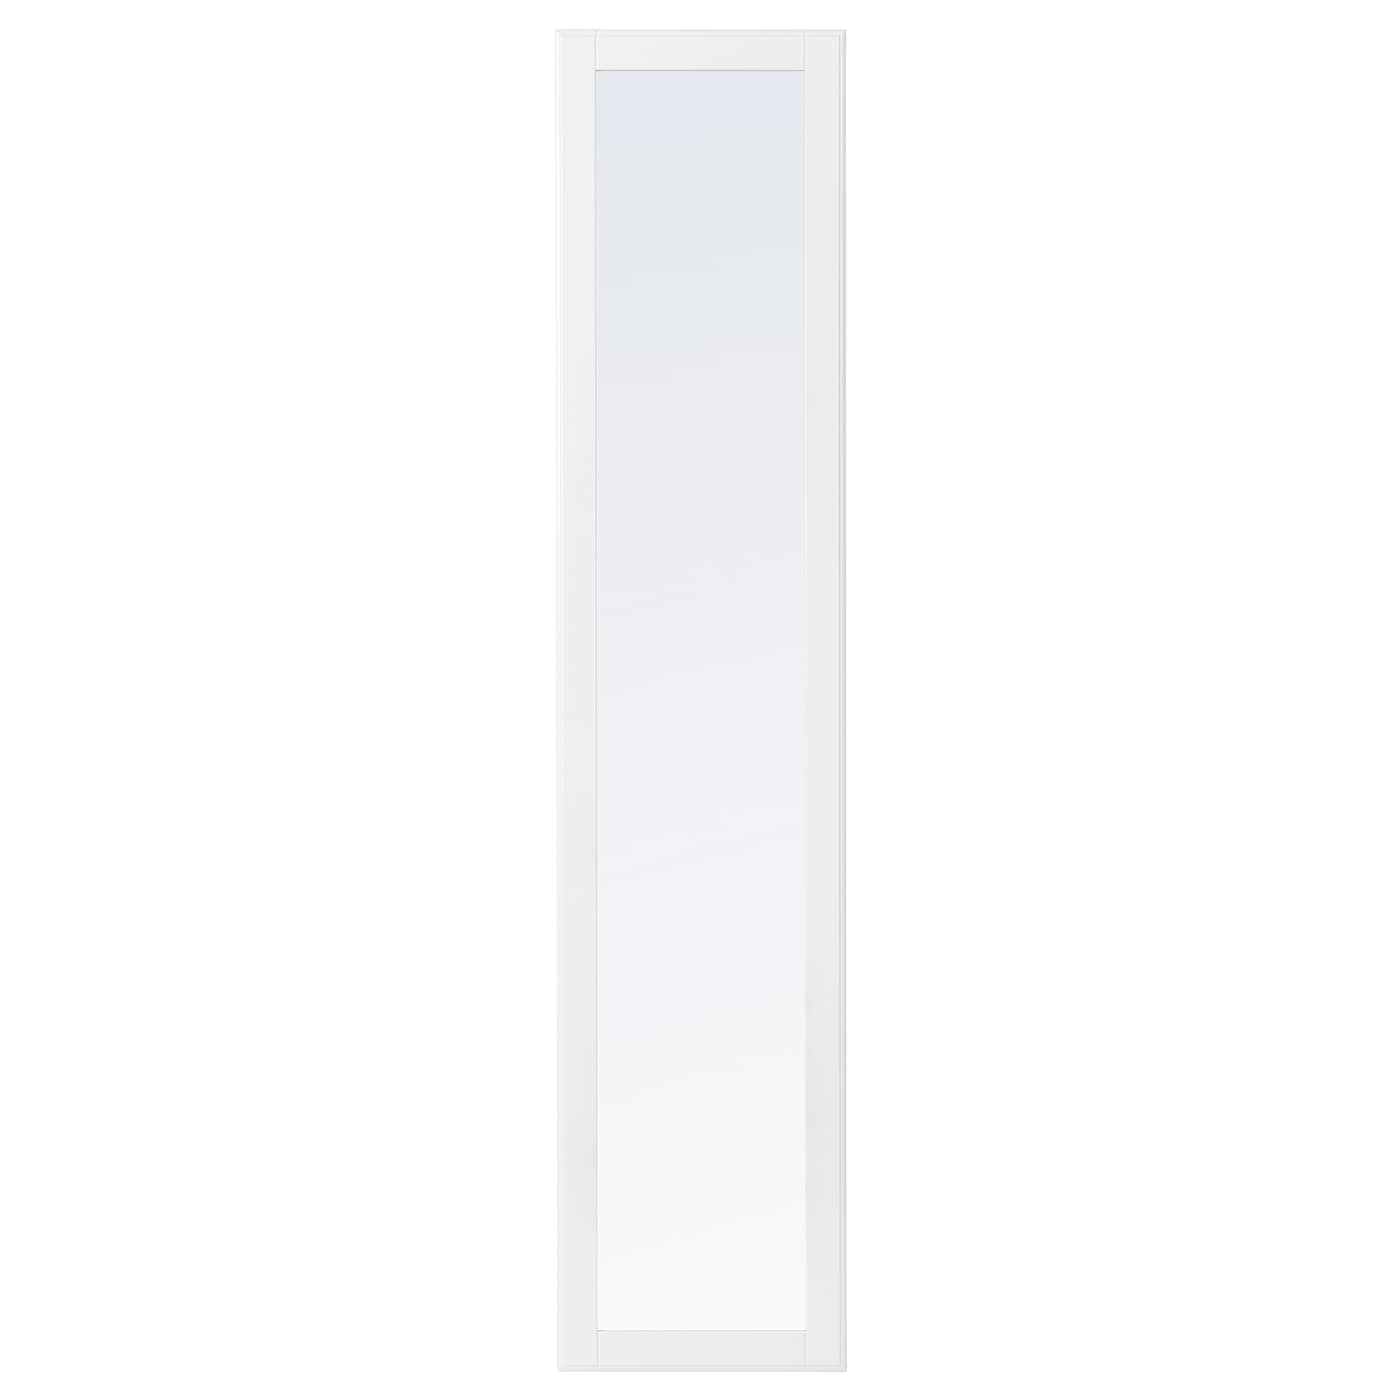 Дверь с петлями - TYSSEDAL  IKEA/  ТИССЕДАЛЬ ИКЕА, 195х50 см,  прозрачный/белый